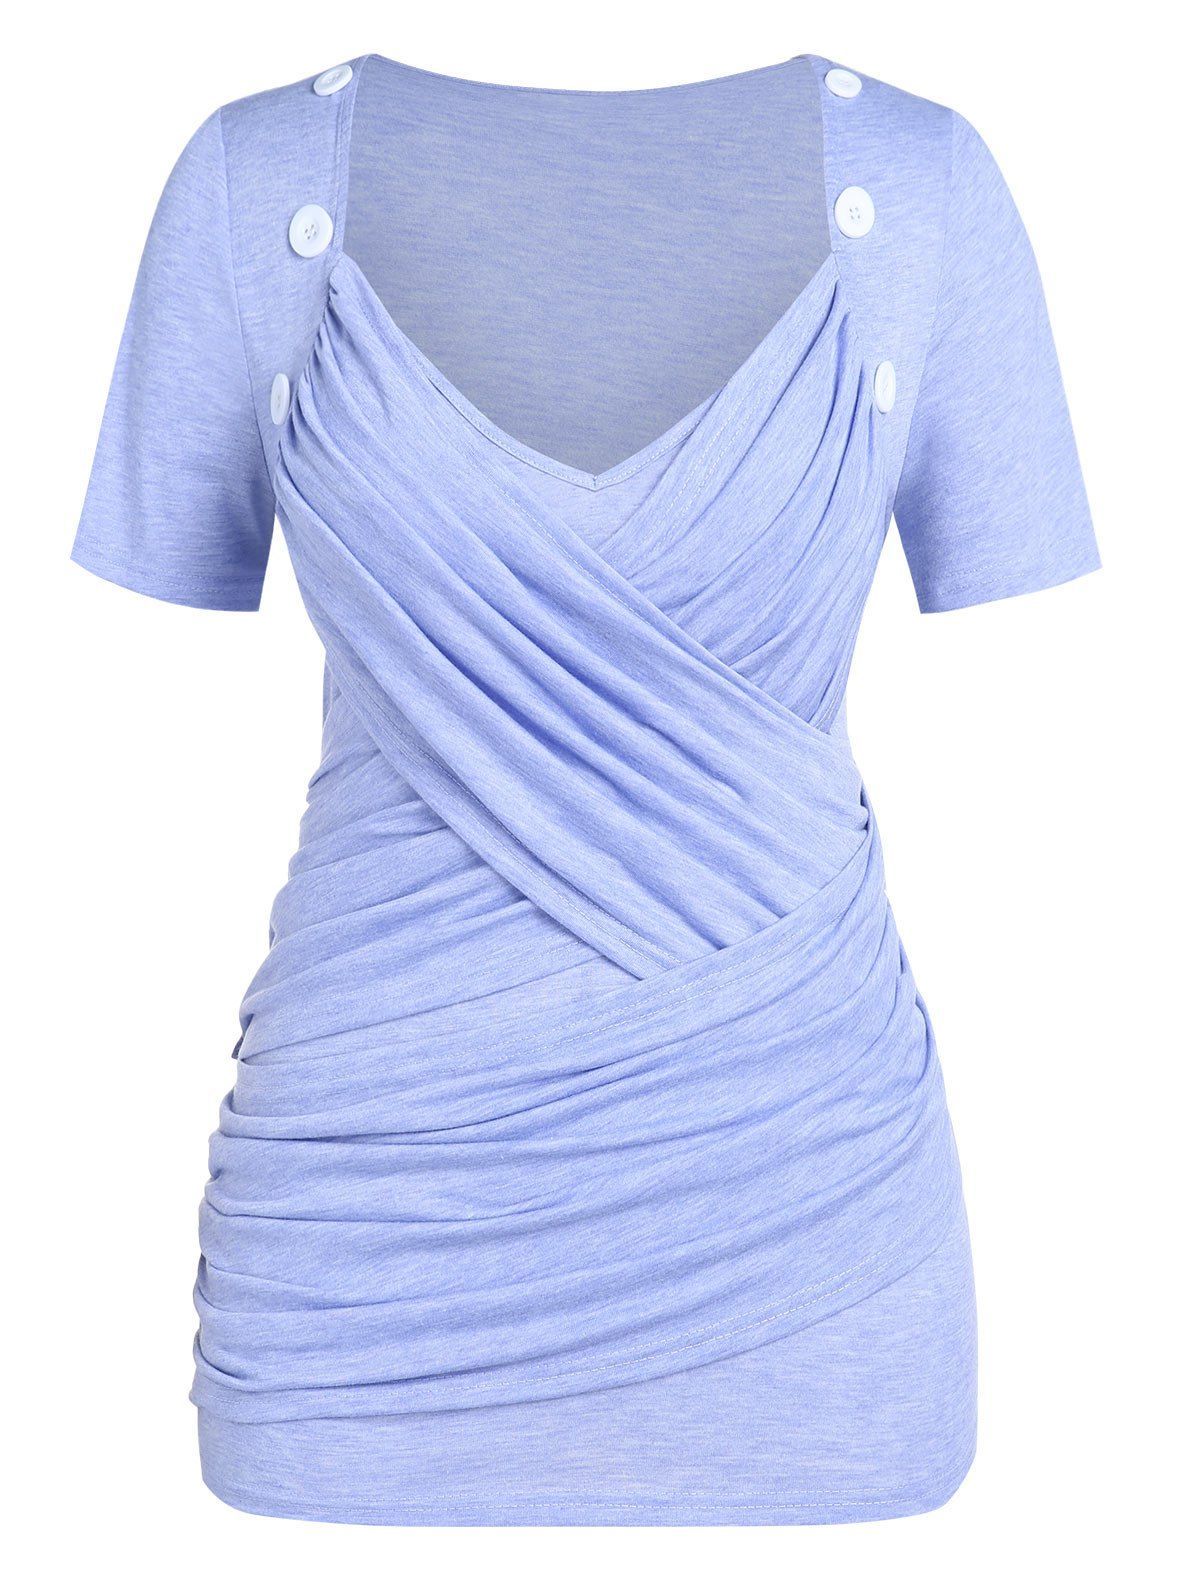 T-Shirt Froncé avec Croisés Grande-Taille - Violet clair 4X